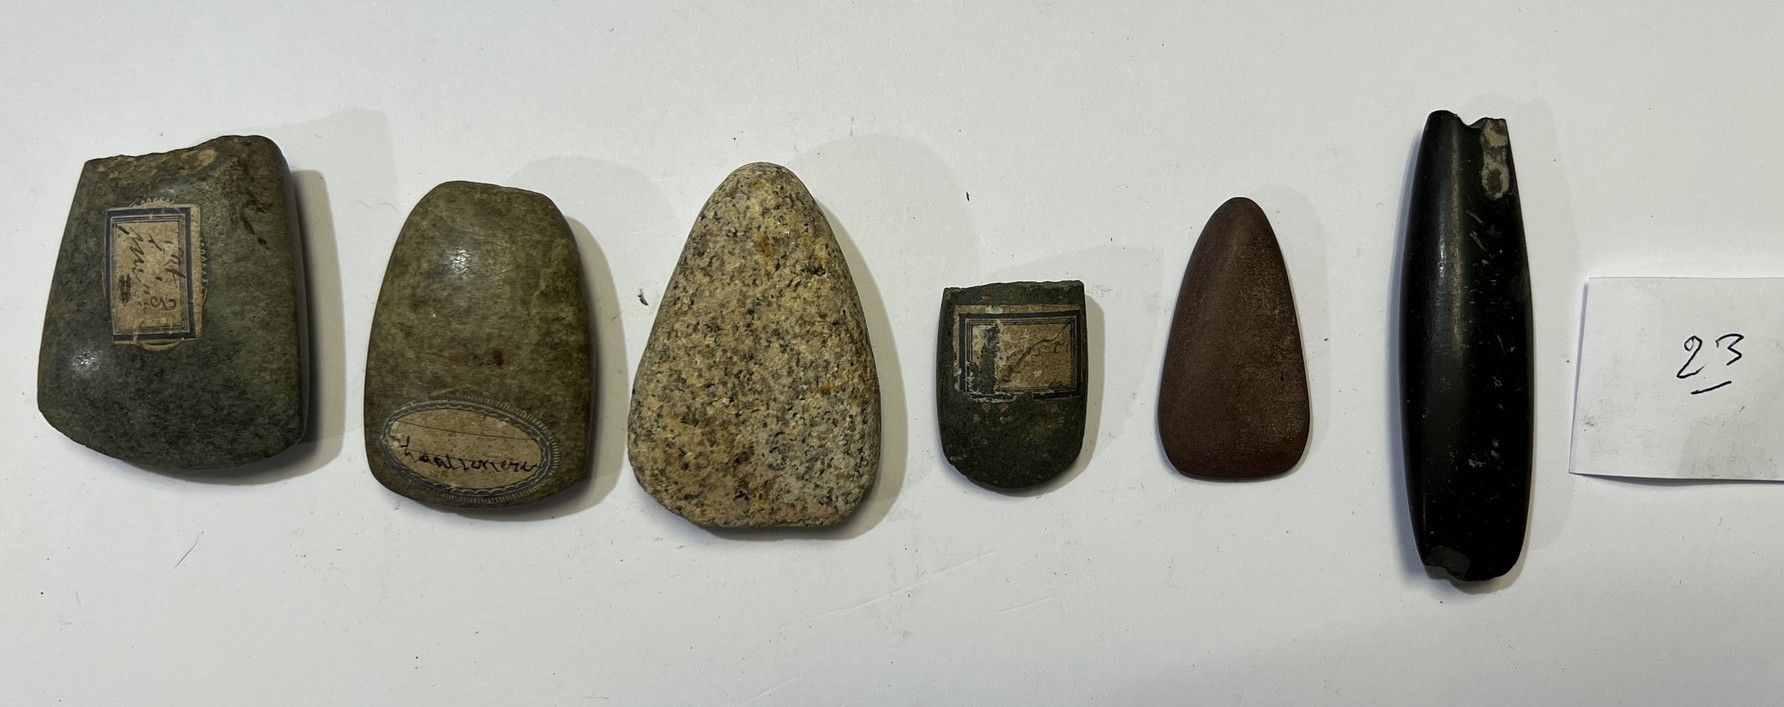 Null 
拍品包括四把磨光的斧头和两块碎片，其中一块是黑石，有一个古老的穿孔脚跟，一块是花岗岩，一块是纤维岩，一块是白云岩，一块是红石，一块是翡翠？


法国&hellip;